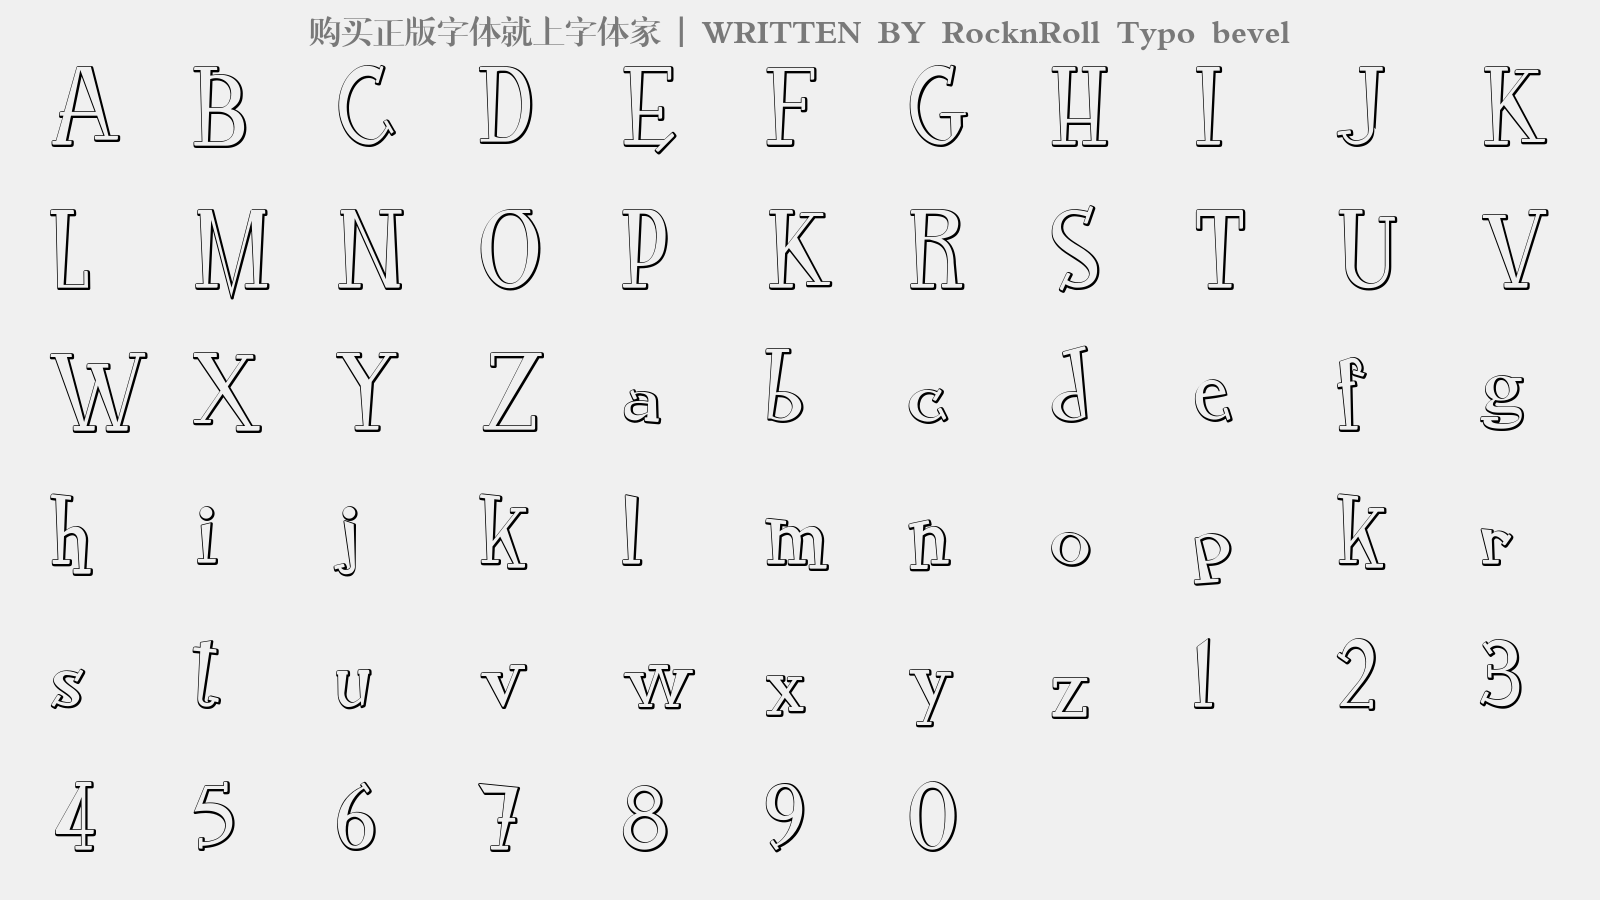 RocknRoll Typo bevel - 大写字母/小写字母/数字